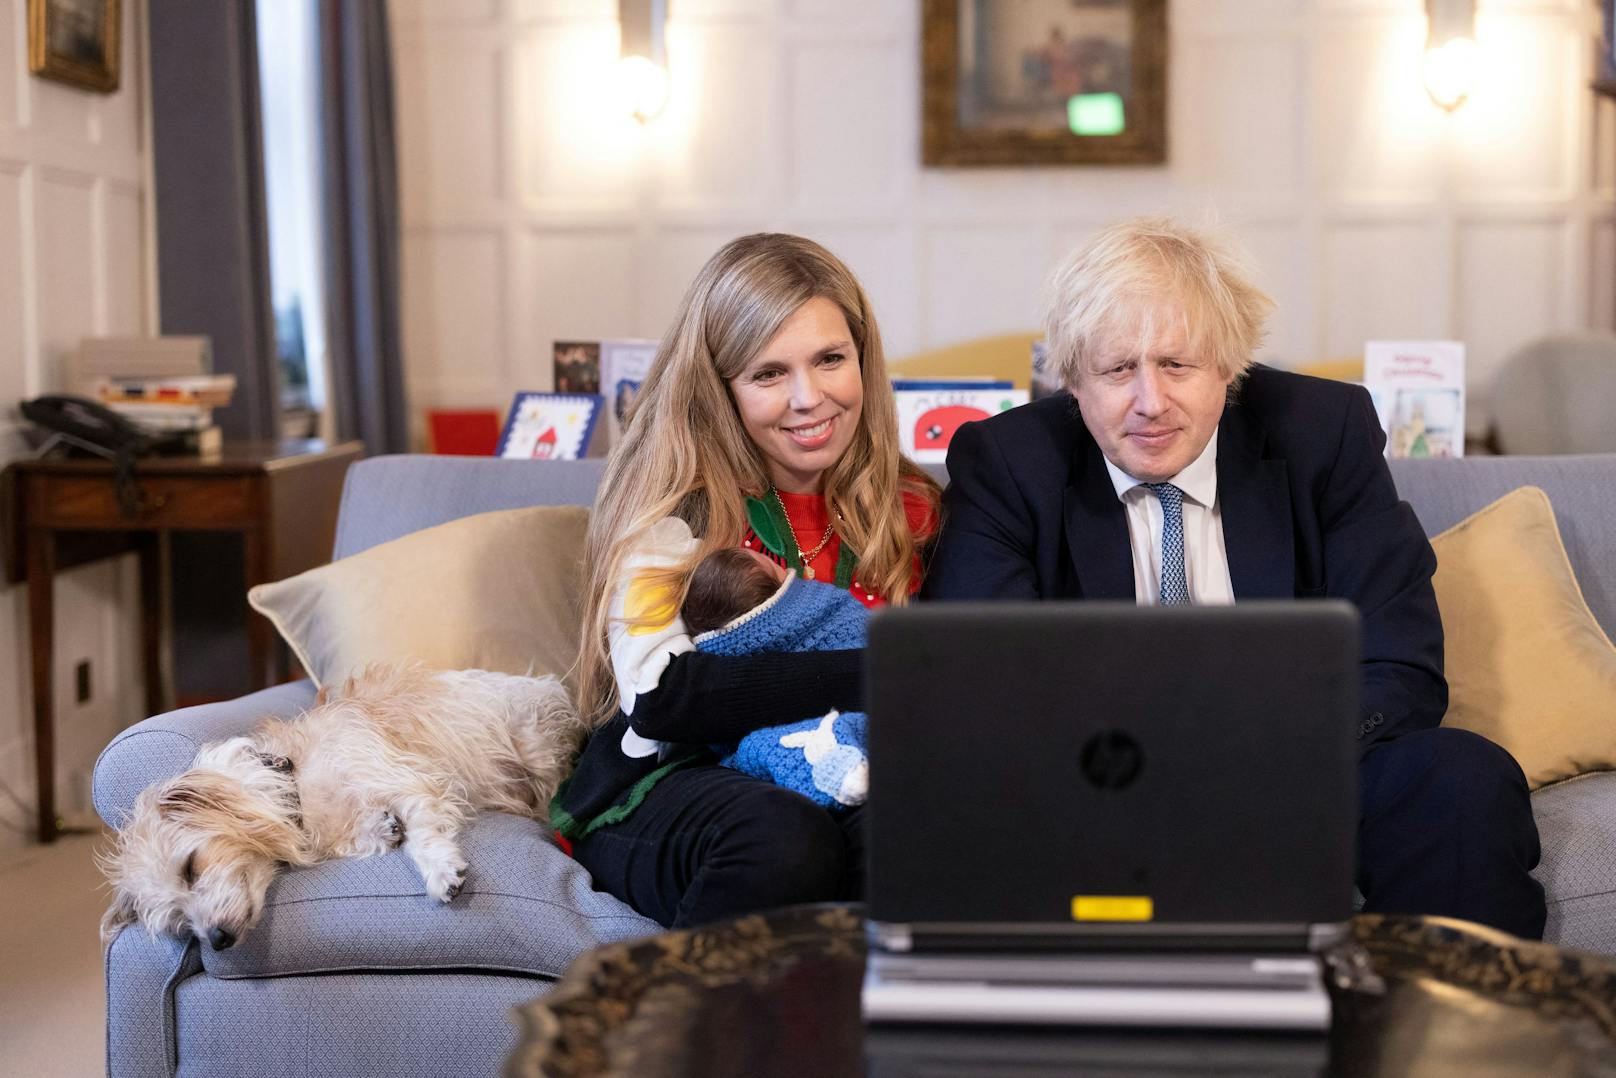 Da war alles noch in Ordnung: Premierminister Boris Johnson und seine Frau Carrie mit der gemeinsamen Tochter Romy am ersten Weihnachtstag.